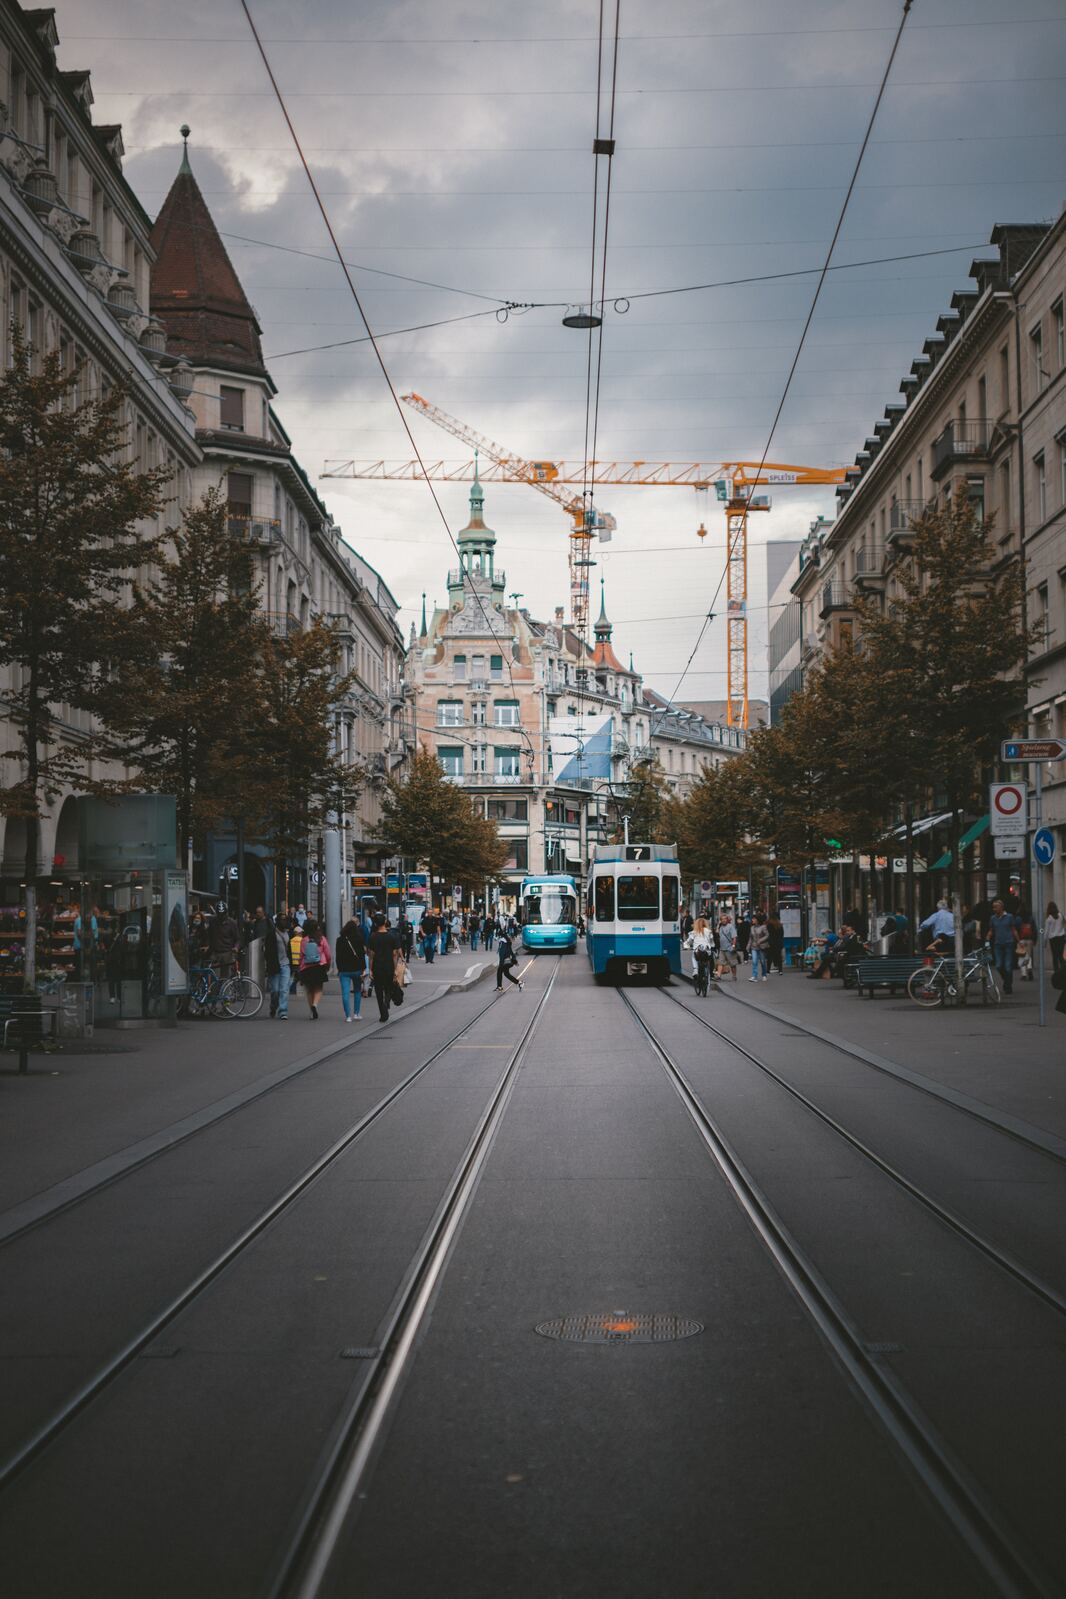 Image of Zurich Bahnhofstrasse by Team PhotoHound